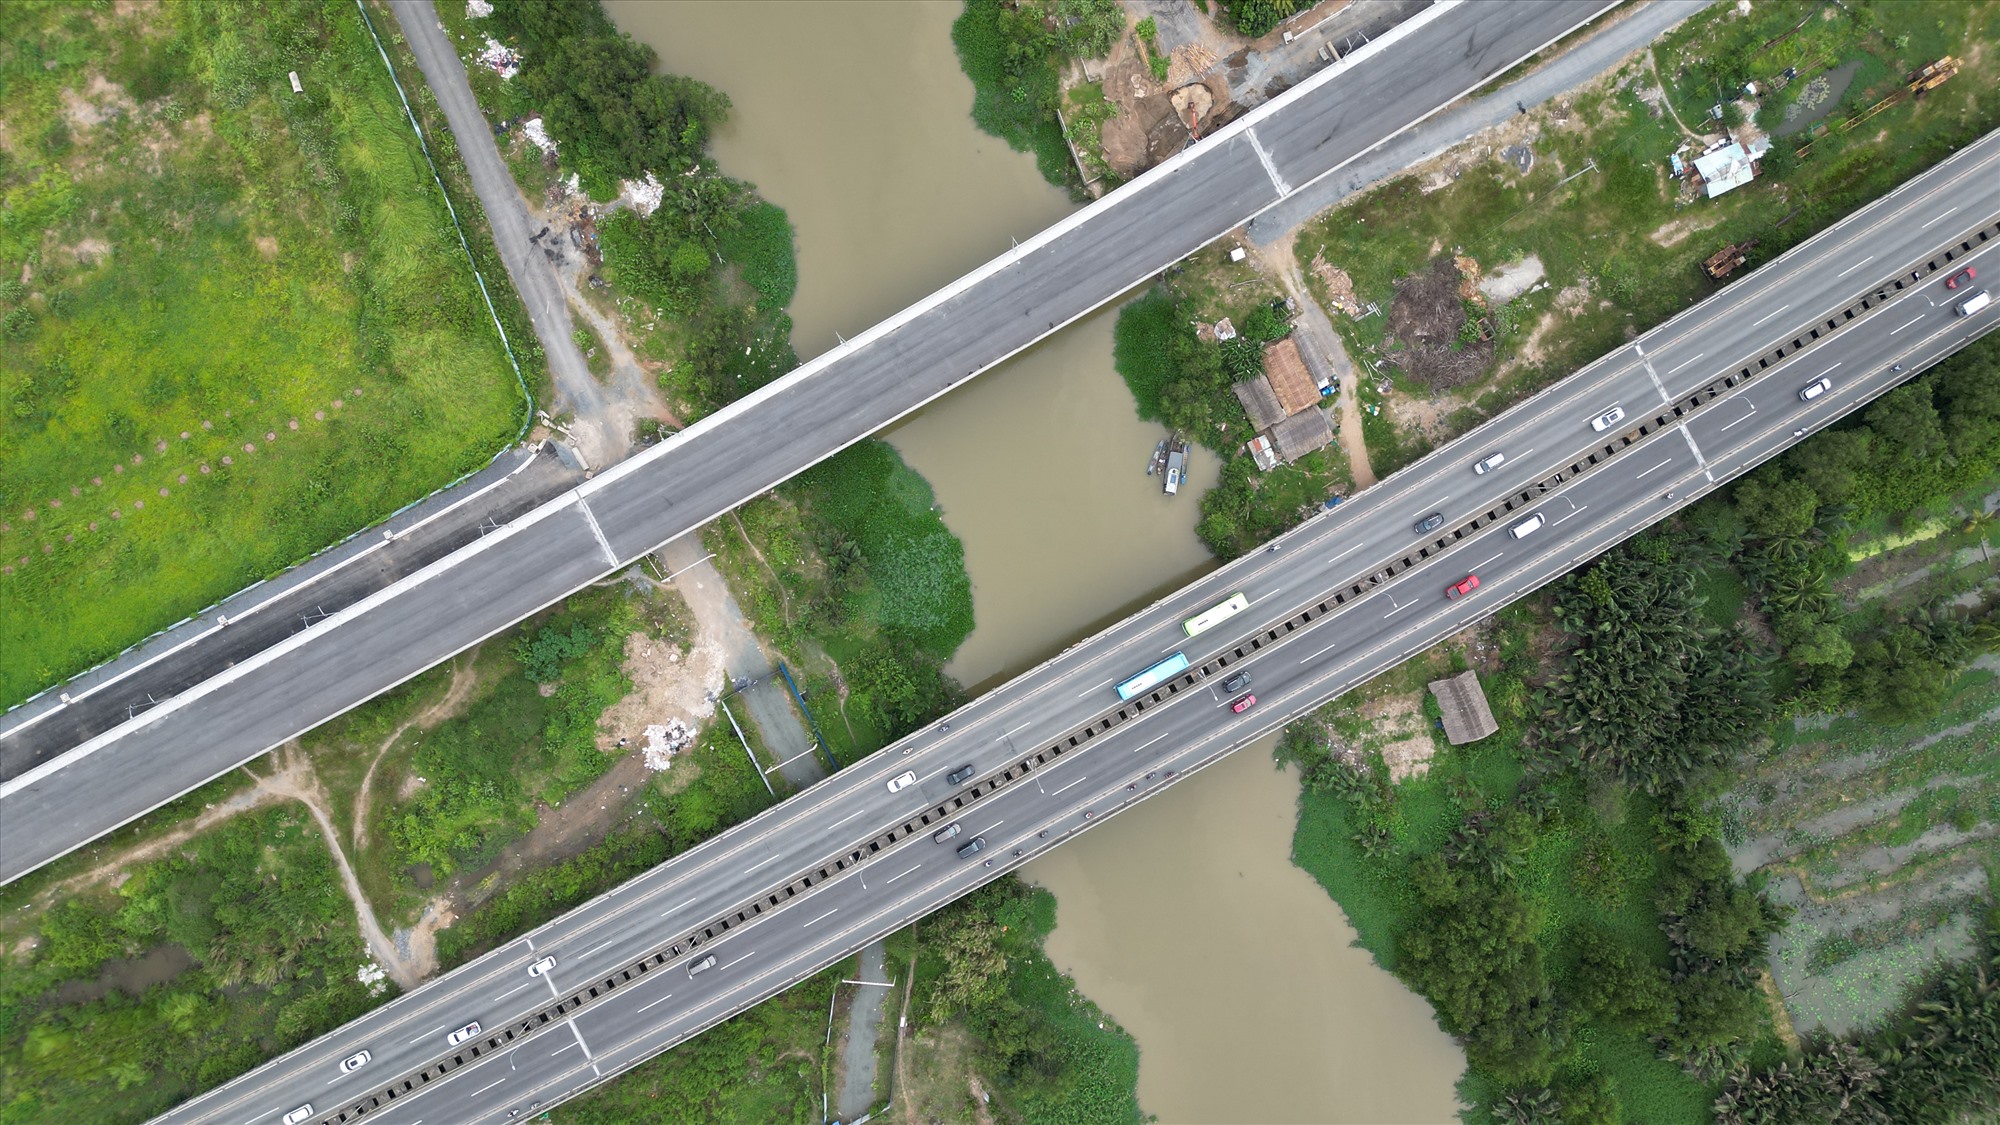 Cũng theo hồ sơ đề xuất, đoạn tuyến cao tốc từ nút giao An Phú đến đường vành đai 2 đã được GPMB và đang được địa phương quản lý theo lộ giới bề rộng 116 m, trong đó đã cơ cấu đủ cho đường bộ cao tốc (quy mô 8 làn xe bề rộng 36 m) và hai tuyến đường sắt tốc độ cao Nha Trang - TP HCM; đường sắt nhẹ Thủ Thiêm - Long Thành (bề rộng dải đất dành cho đường sắt rộng 40 m) và đường đô thị song hành hai bên (mỗi bên rộng 20 m).